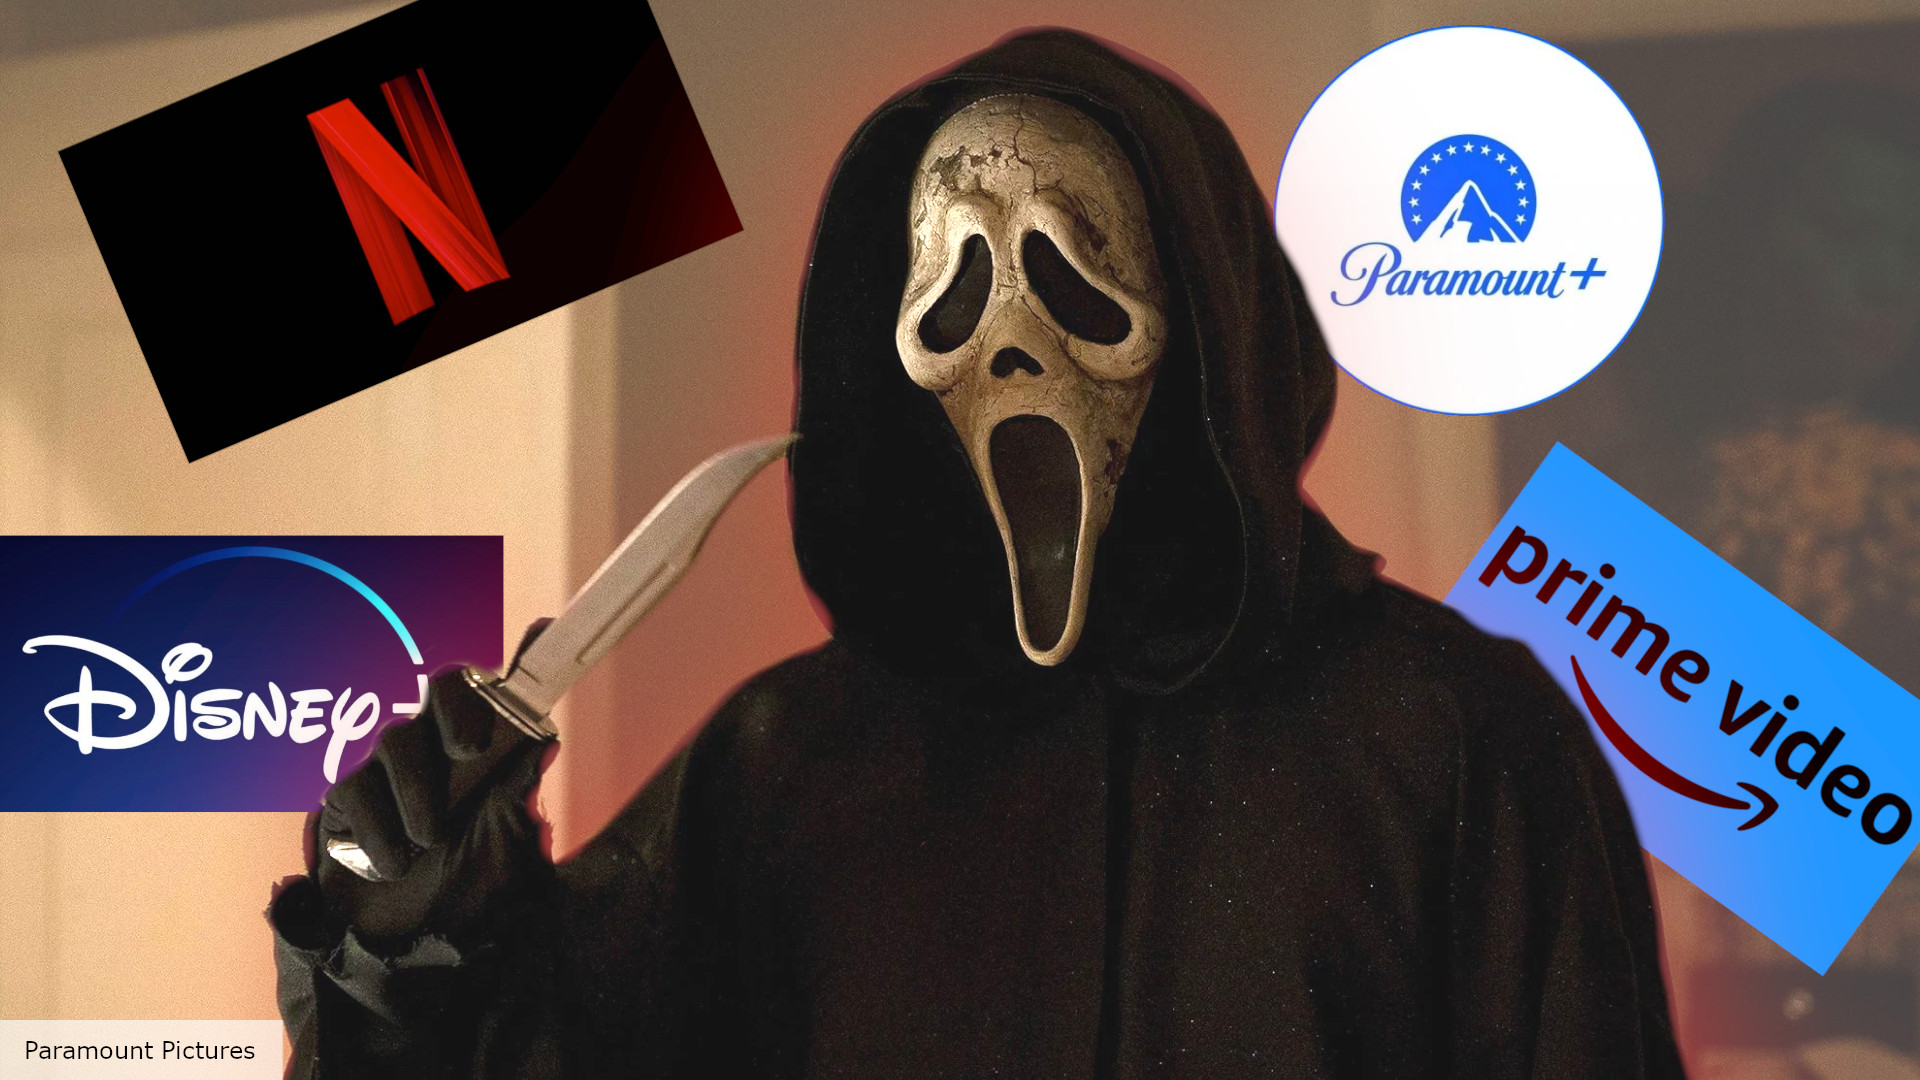 Scream 6 (2023) FuLLMovie Free Online On Streamings